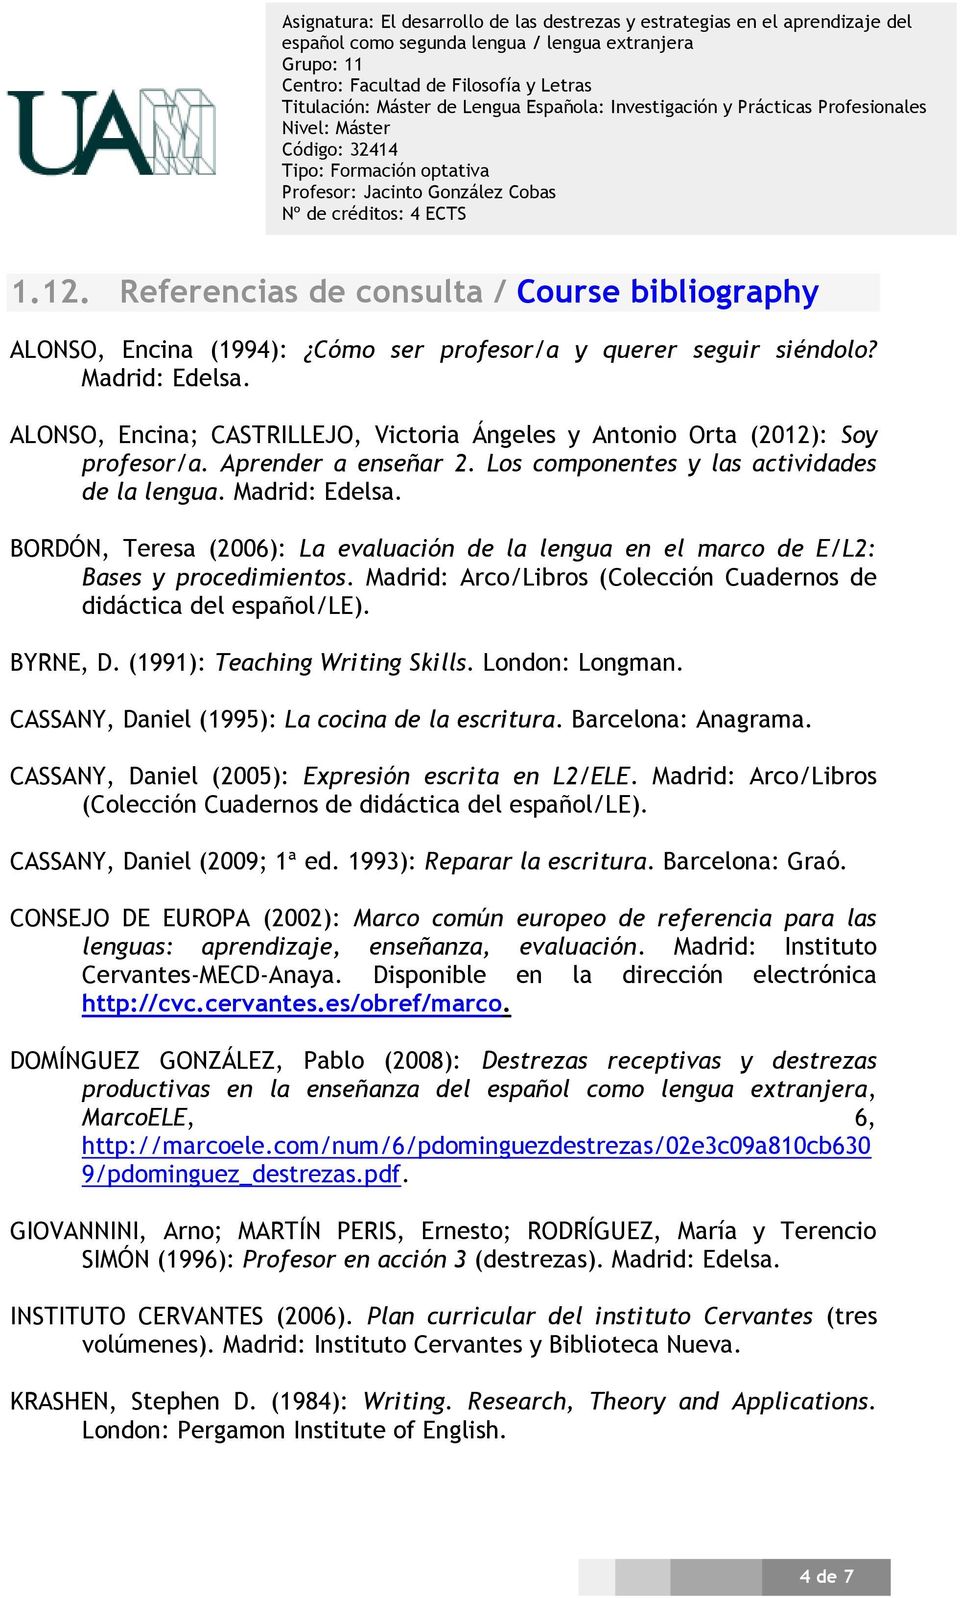 BORDÓN, Teresa (2006): La evaluación de la lengua en el marco de E/L2: Bases y procedimientos. Madrid: Arco/Libros (Colección Cuadernos de didáctica del español/le). BYRNE, D.